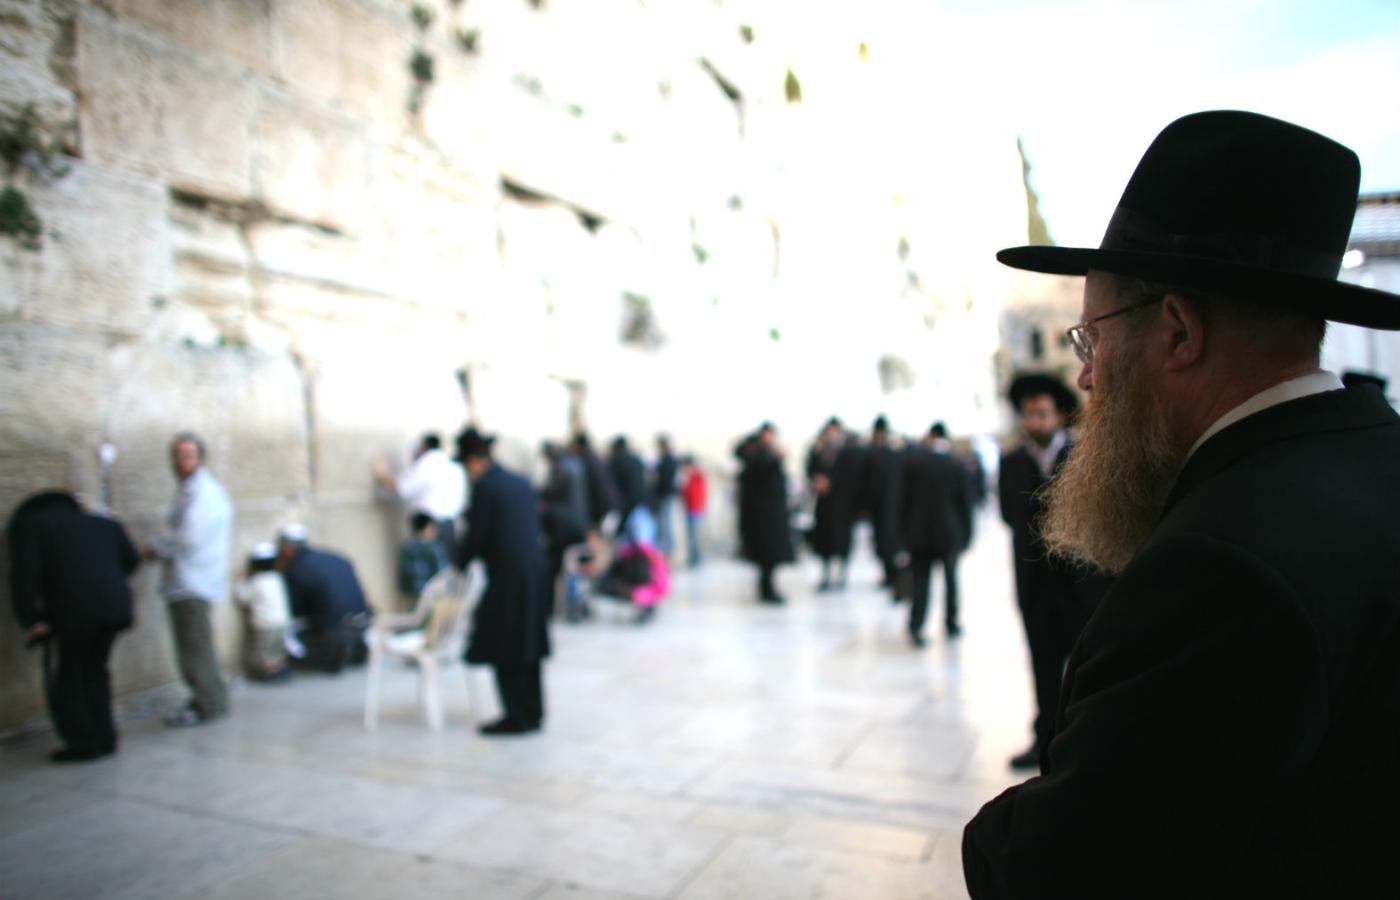 Eitan Anner: Jerozolima nie należy do nikogo, jest szczególnym miejscem.